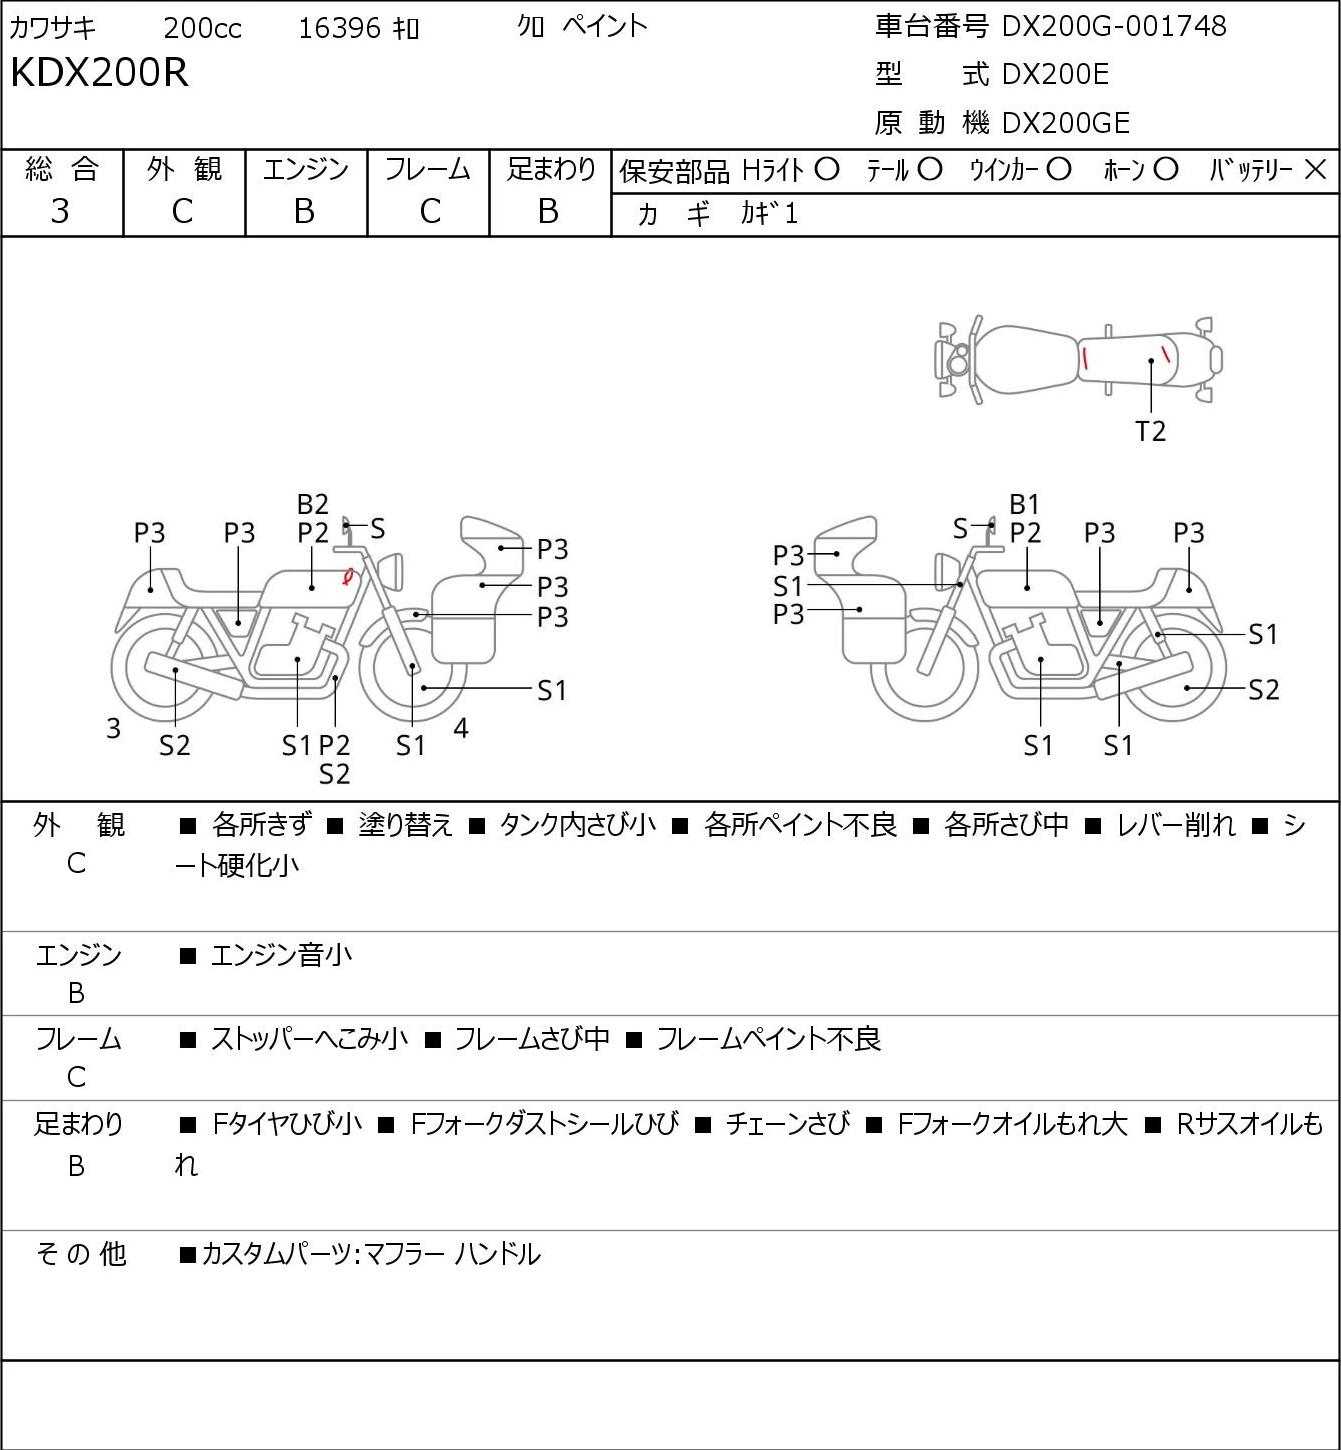 Kawasaki KDX 200 SR DX200G г. 16396